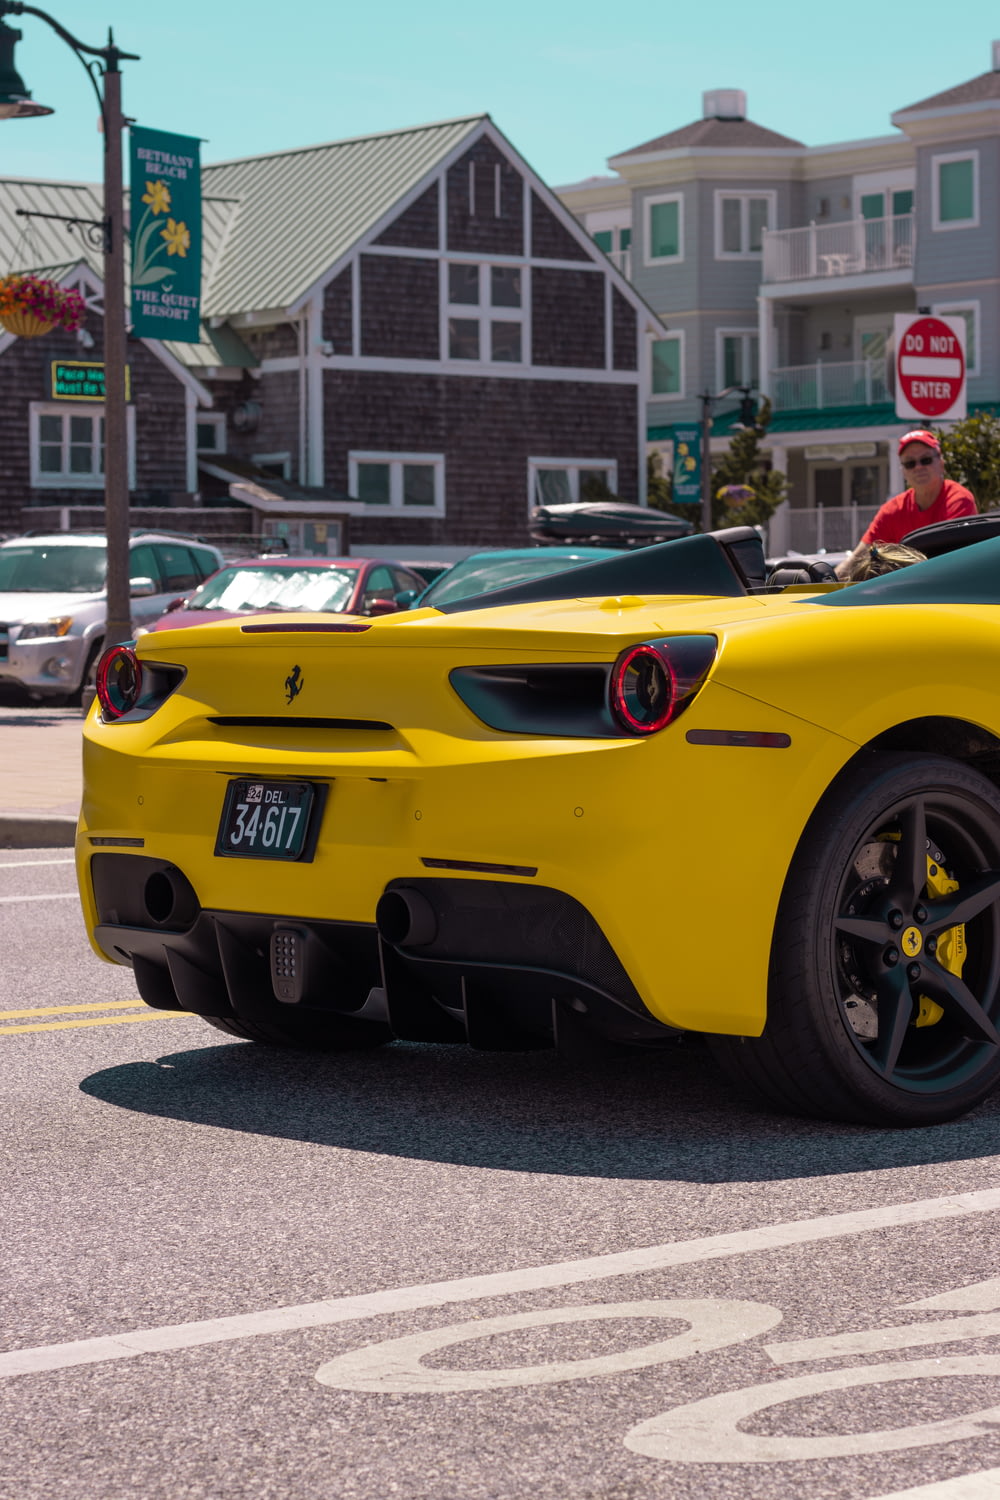 Voiture de sport Ferrari jaune sur route pendant la journée